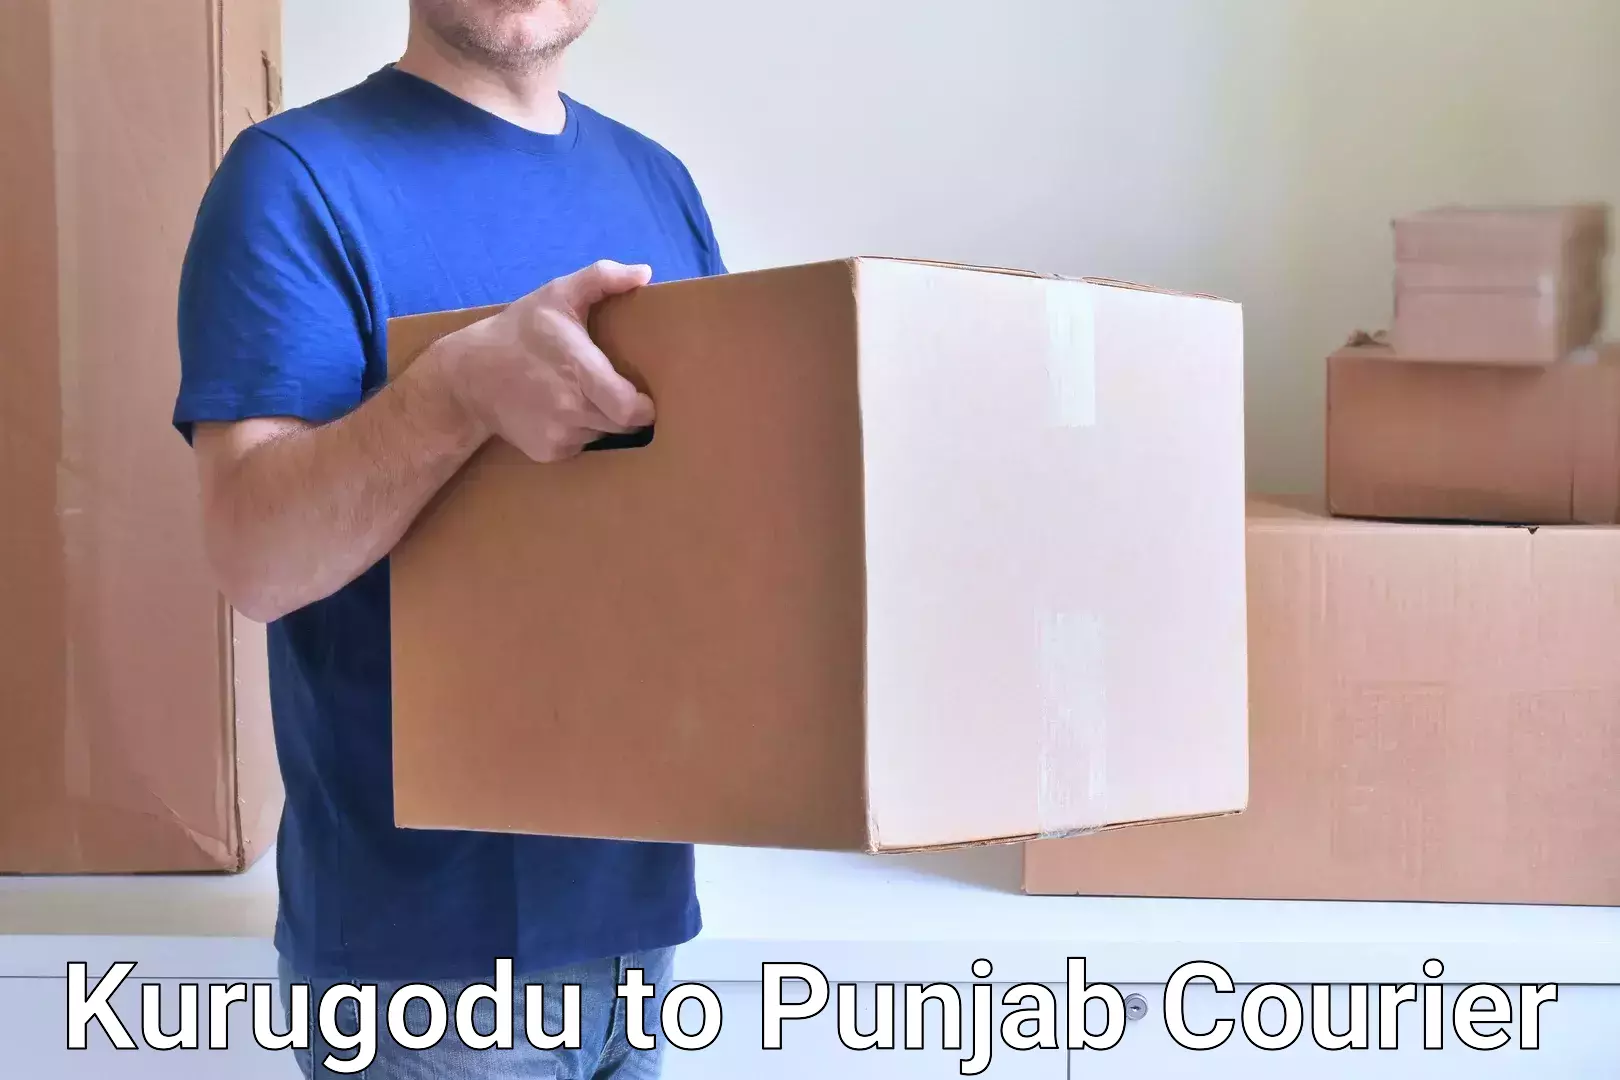 Personalized courier experiences Kurugodu to Central University of Punjab Bathinda